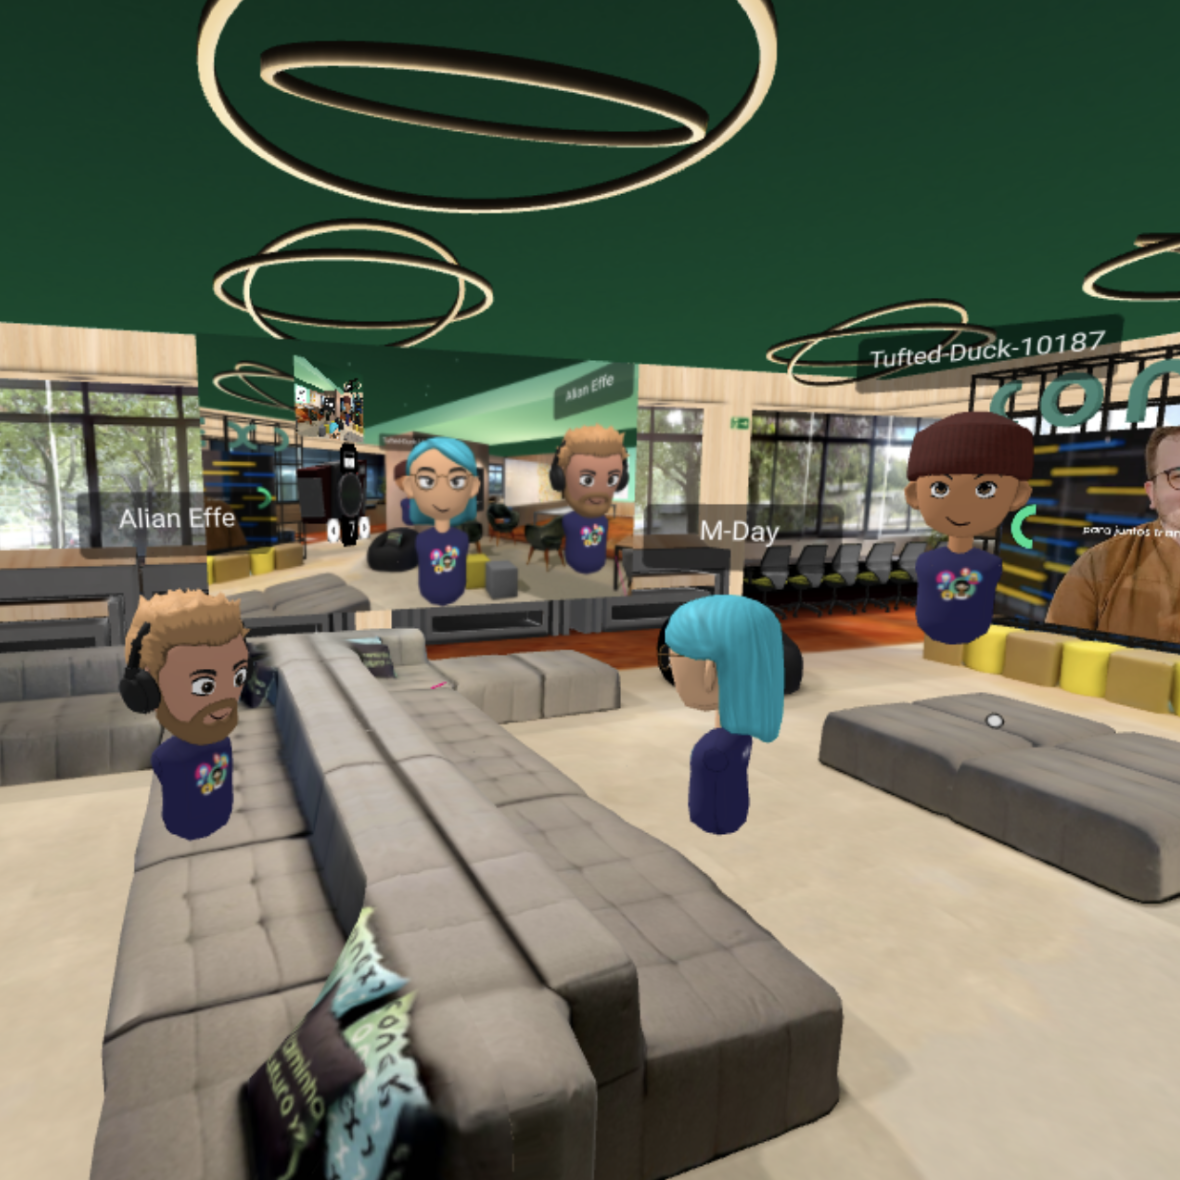 Des avatars en visite dans un bureau virtuel